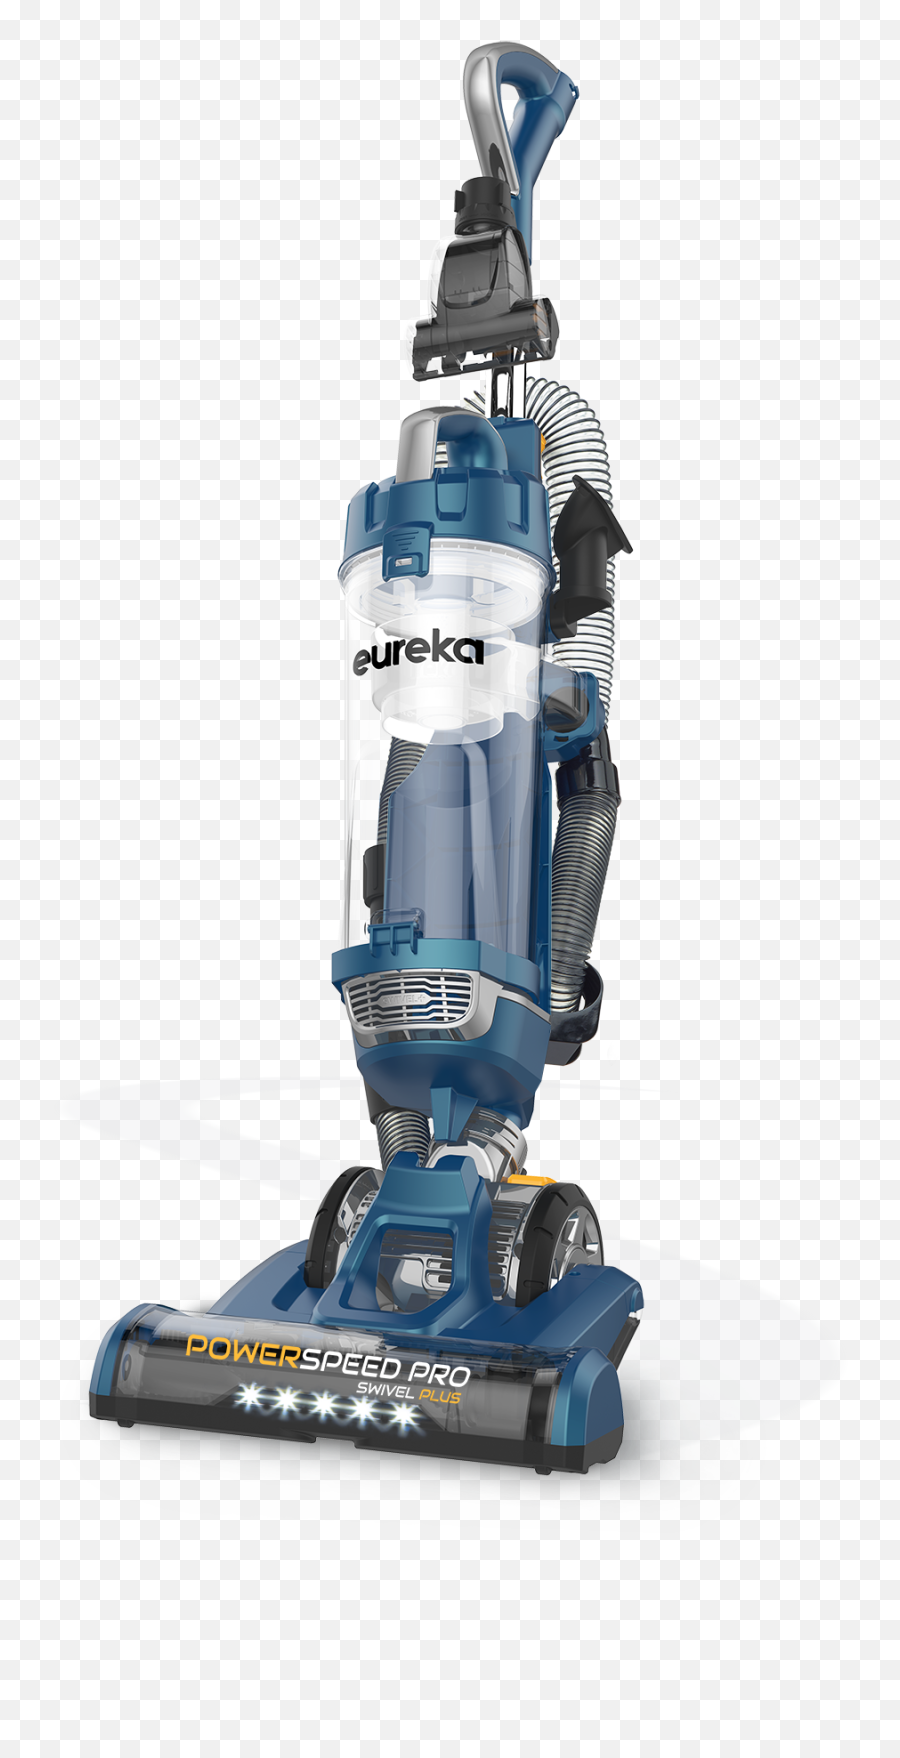 Eureka Powerspeed Bagless Upright Vacuum In The - Eureka Powerspeed Pro Swivel Plus Png,Vacuum Png